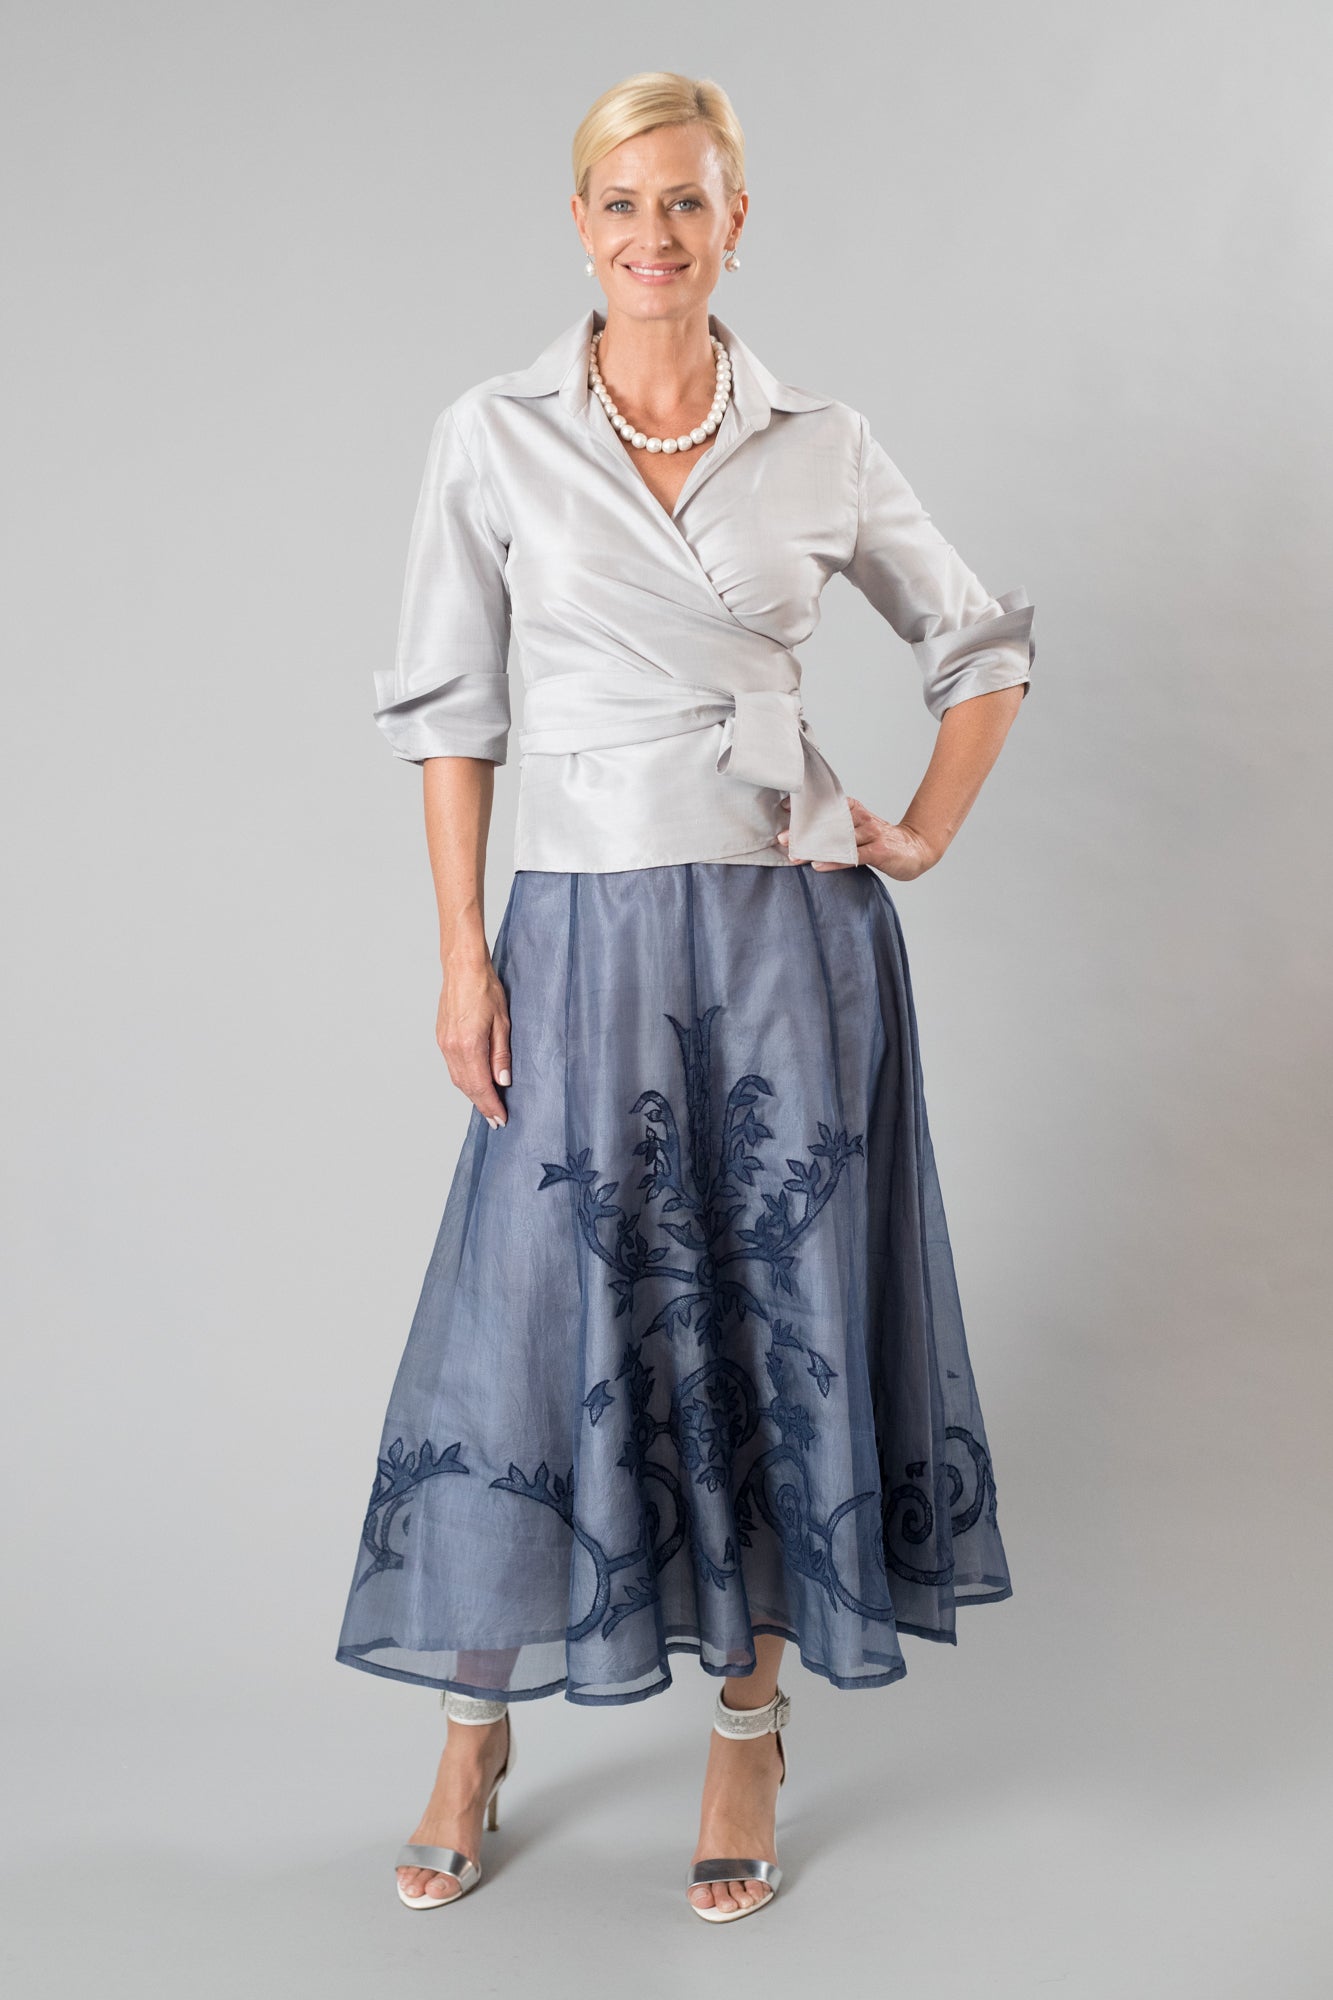 Lace Applique Skirt